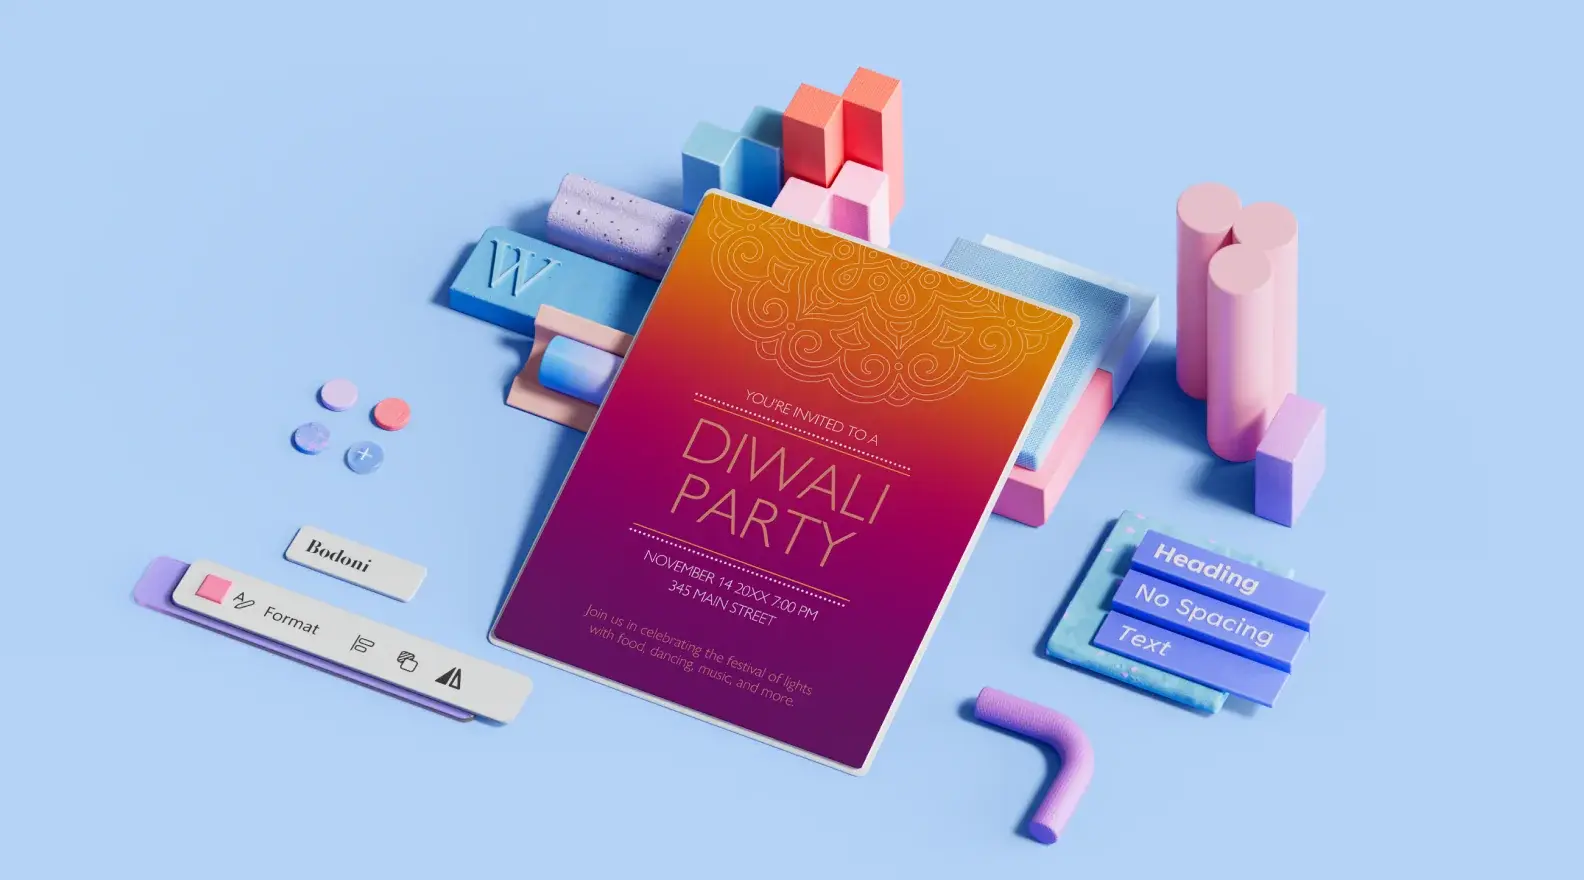 Modelo de panfleto de evento de festa Diwali rodeado por elementos de design em 3D